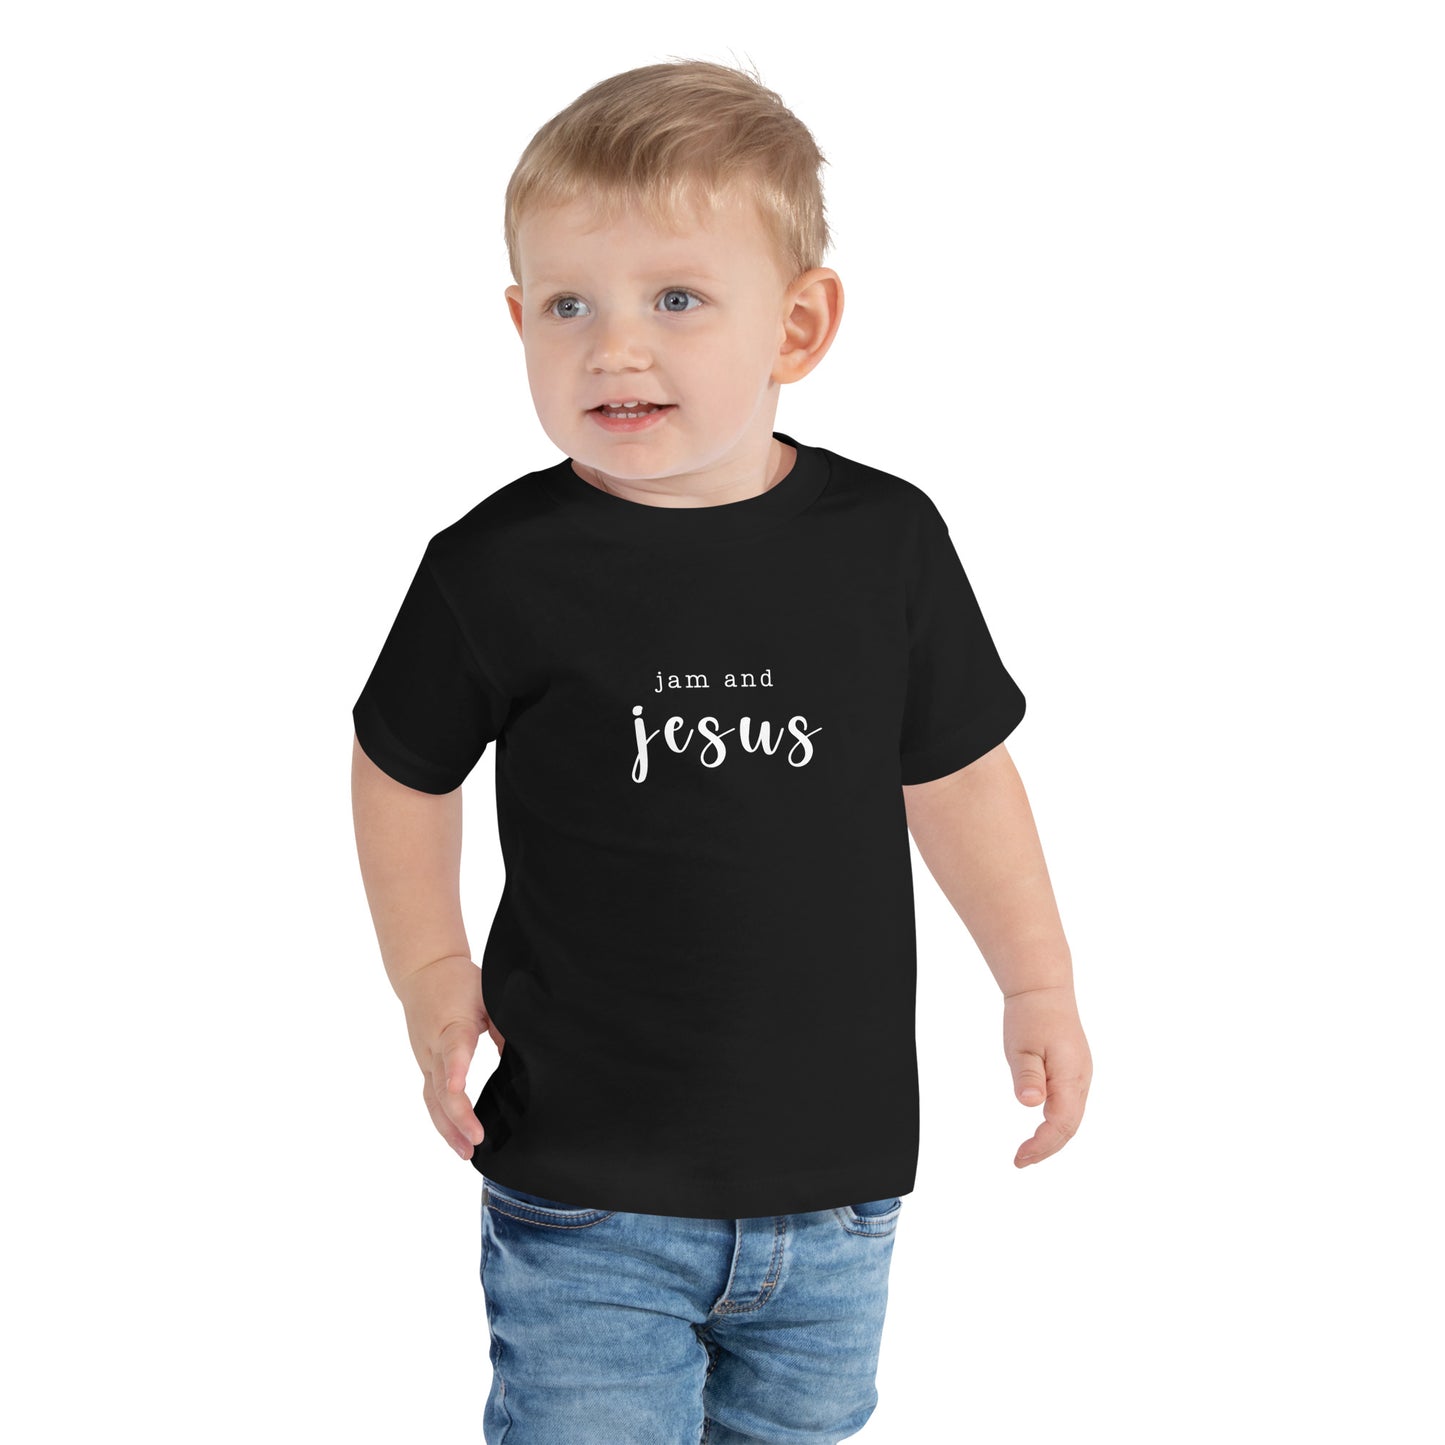 Jam and Jesus Toddler Tee Shirt